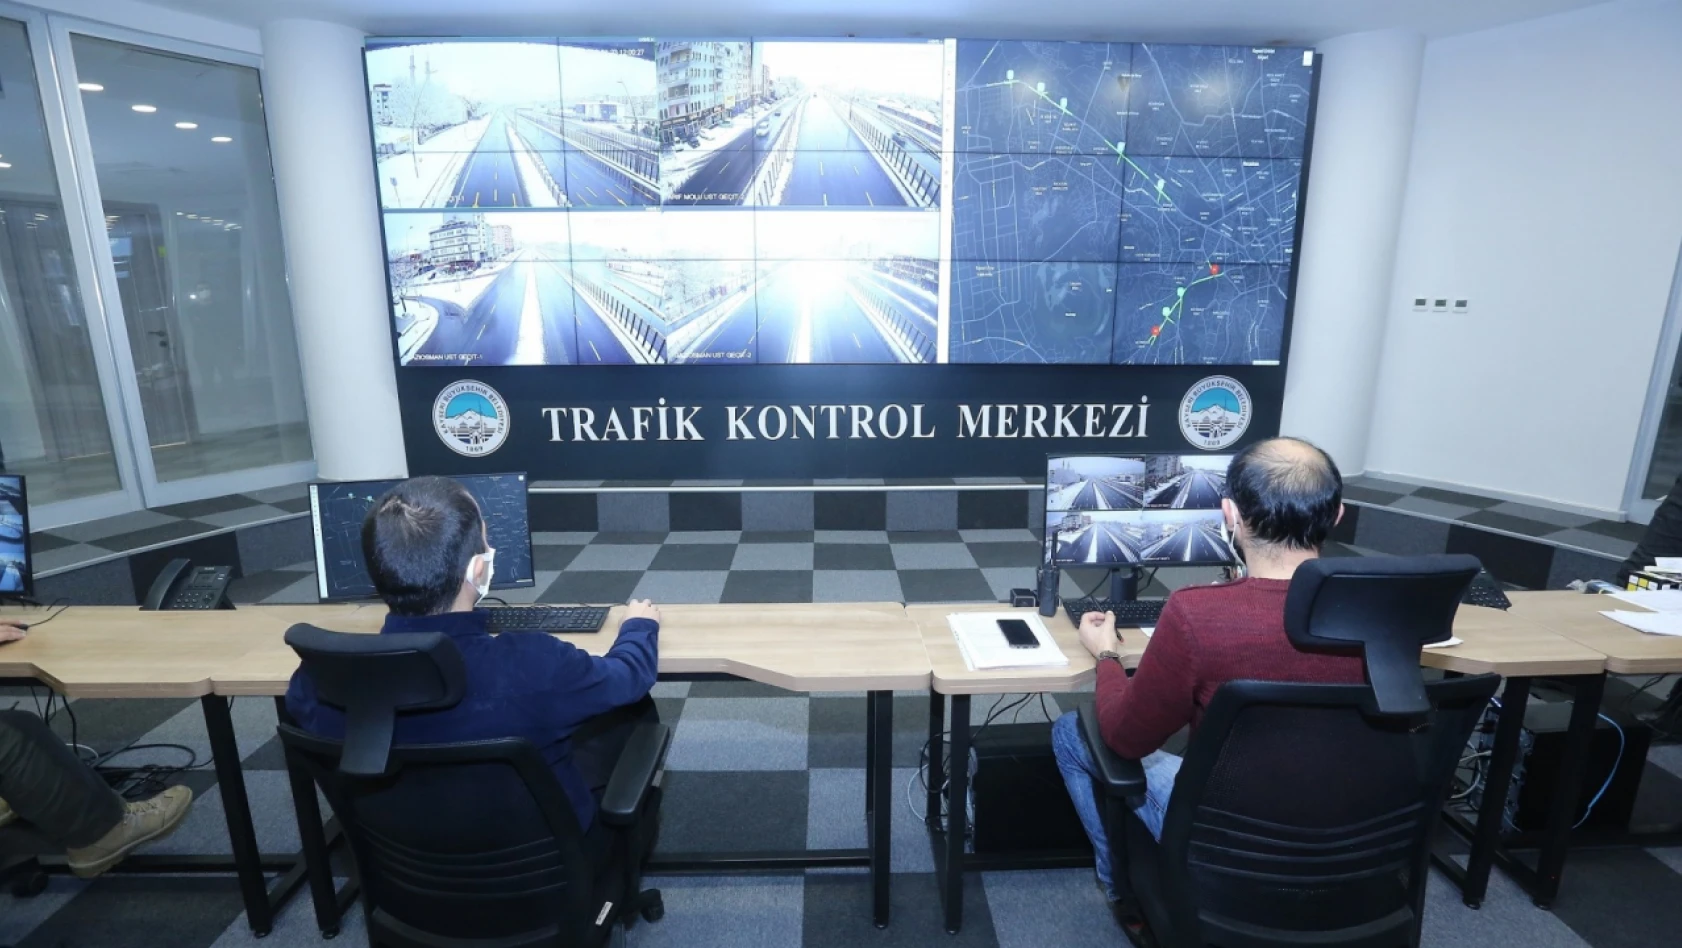 Kayseri'de, Trafik Kontrol Merkezi Projesi - Anında Müdahele İmkanı Sağlıyor!